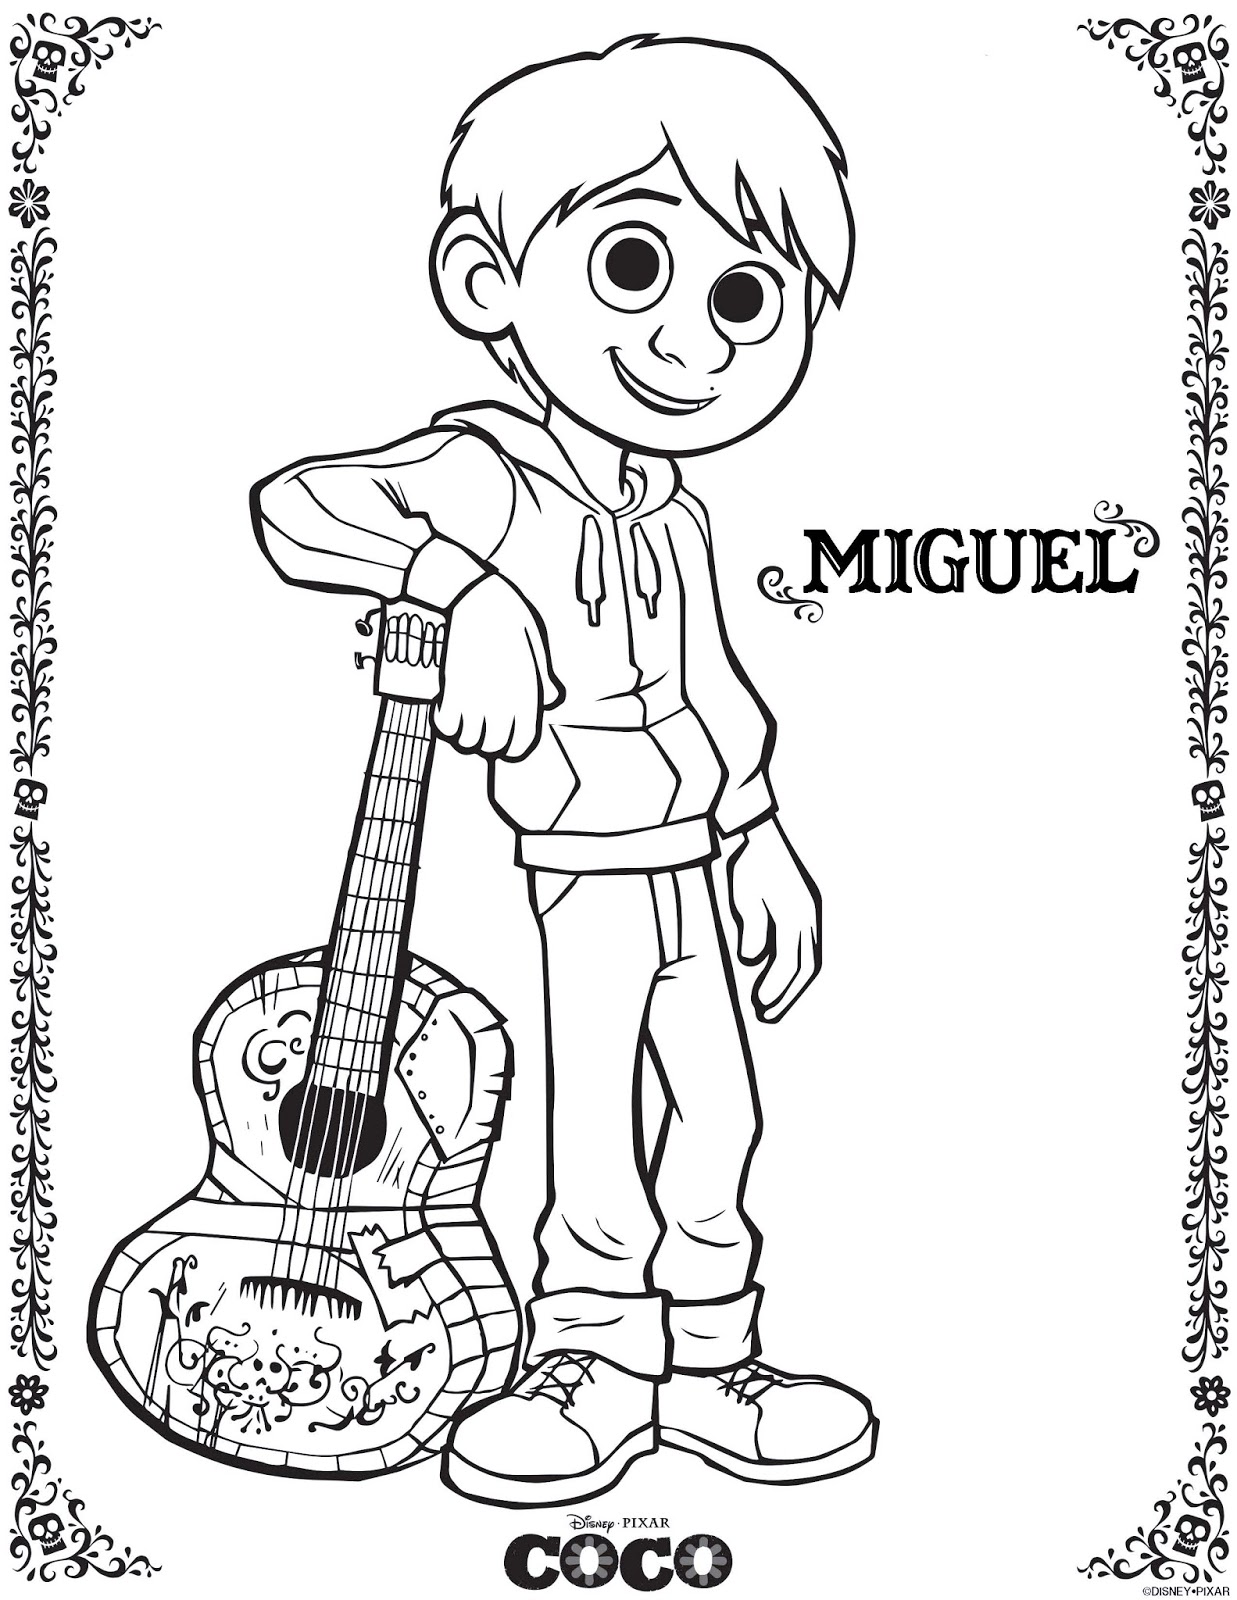 Super simple Coco coloring pages (Disney / Pixar) : Miguel Rivera